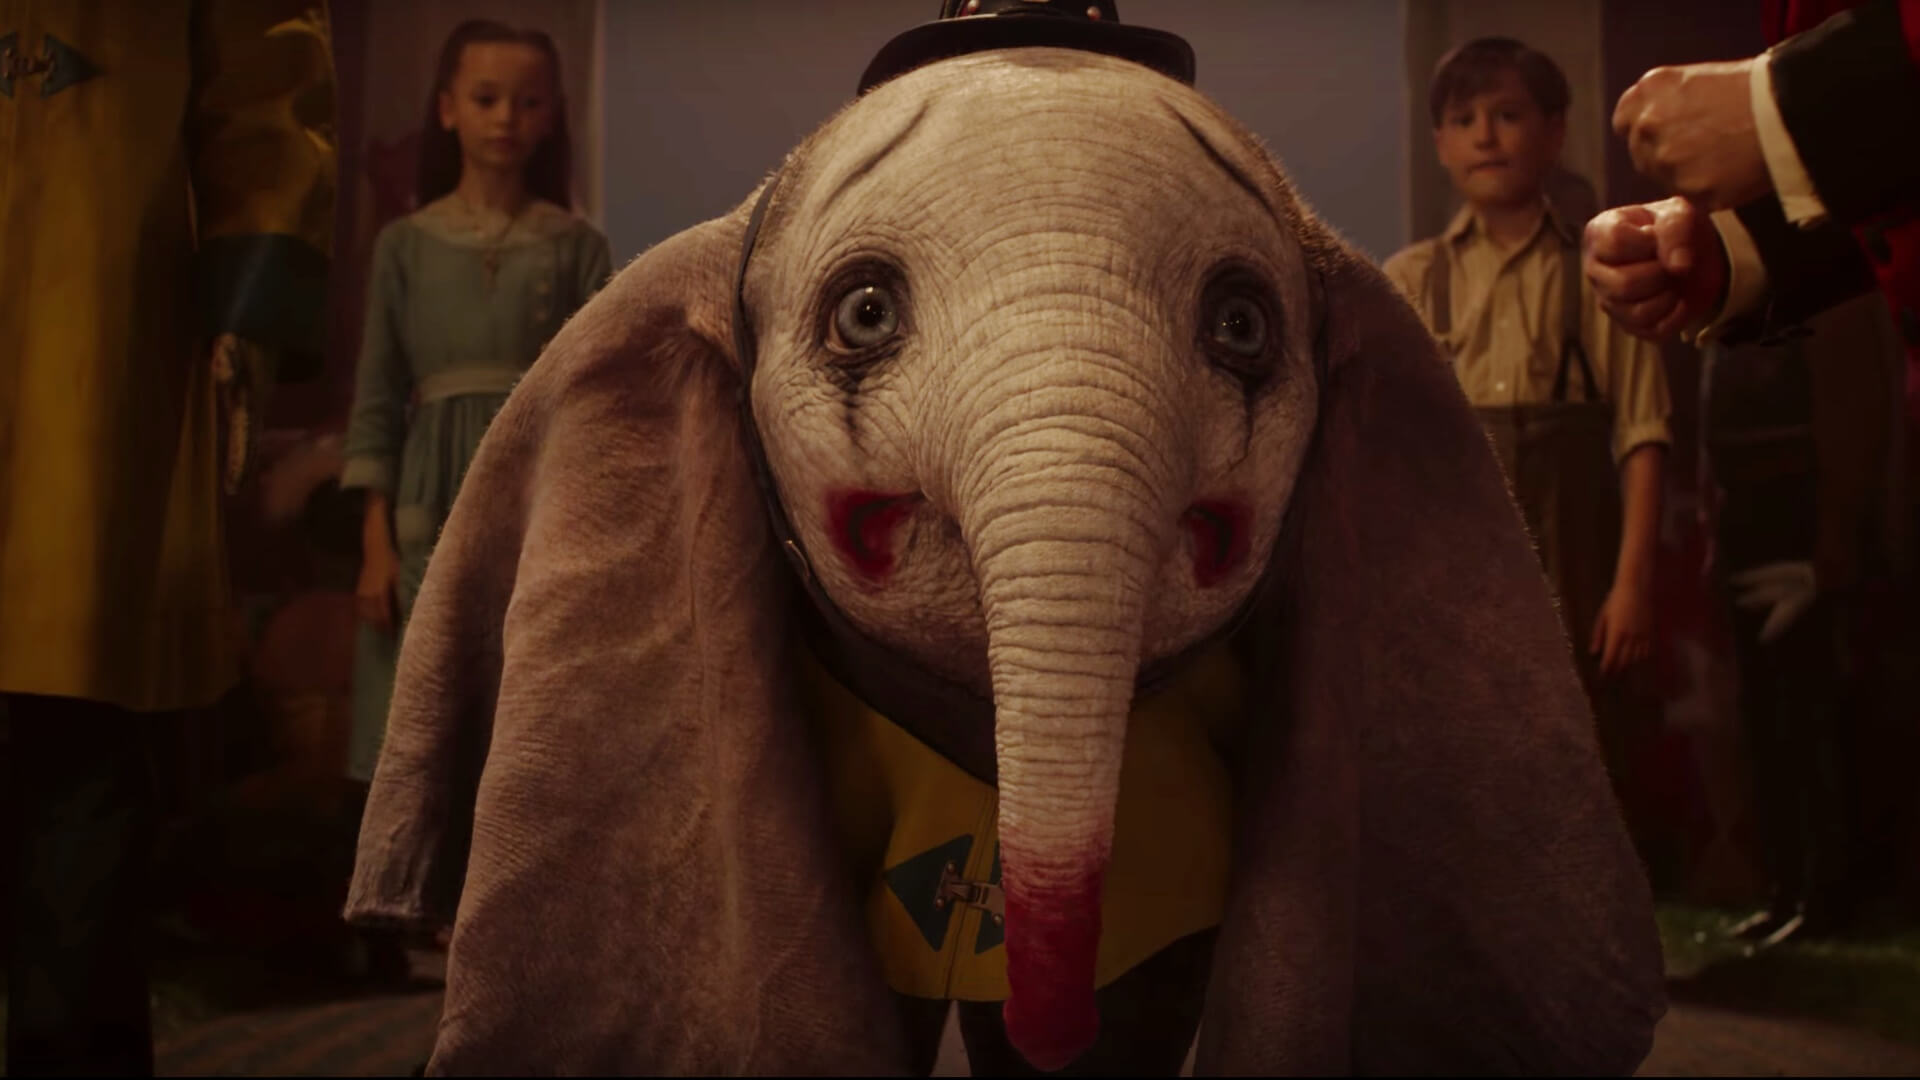 馬戲團視Dumbo的大耳朵為怪誕，竟然把牠打扮成小丑，讓觀眾嘲笑，這幕讓人心酸。後來Dumbo才被發掘到飛翔的異能。